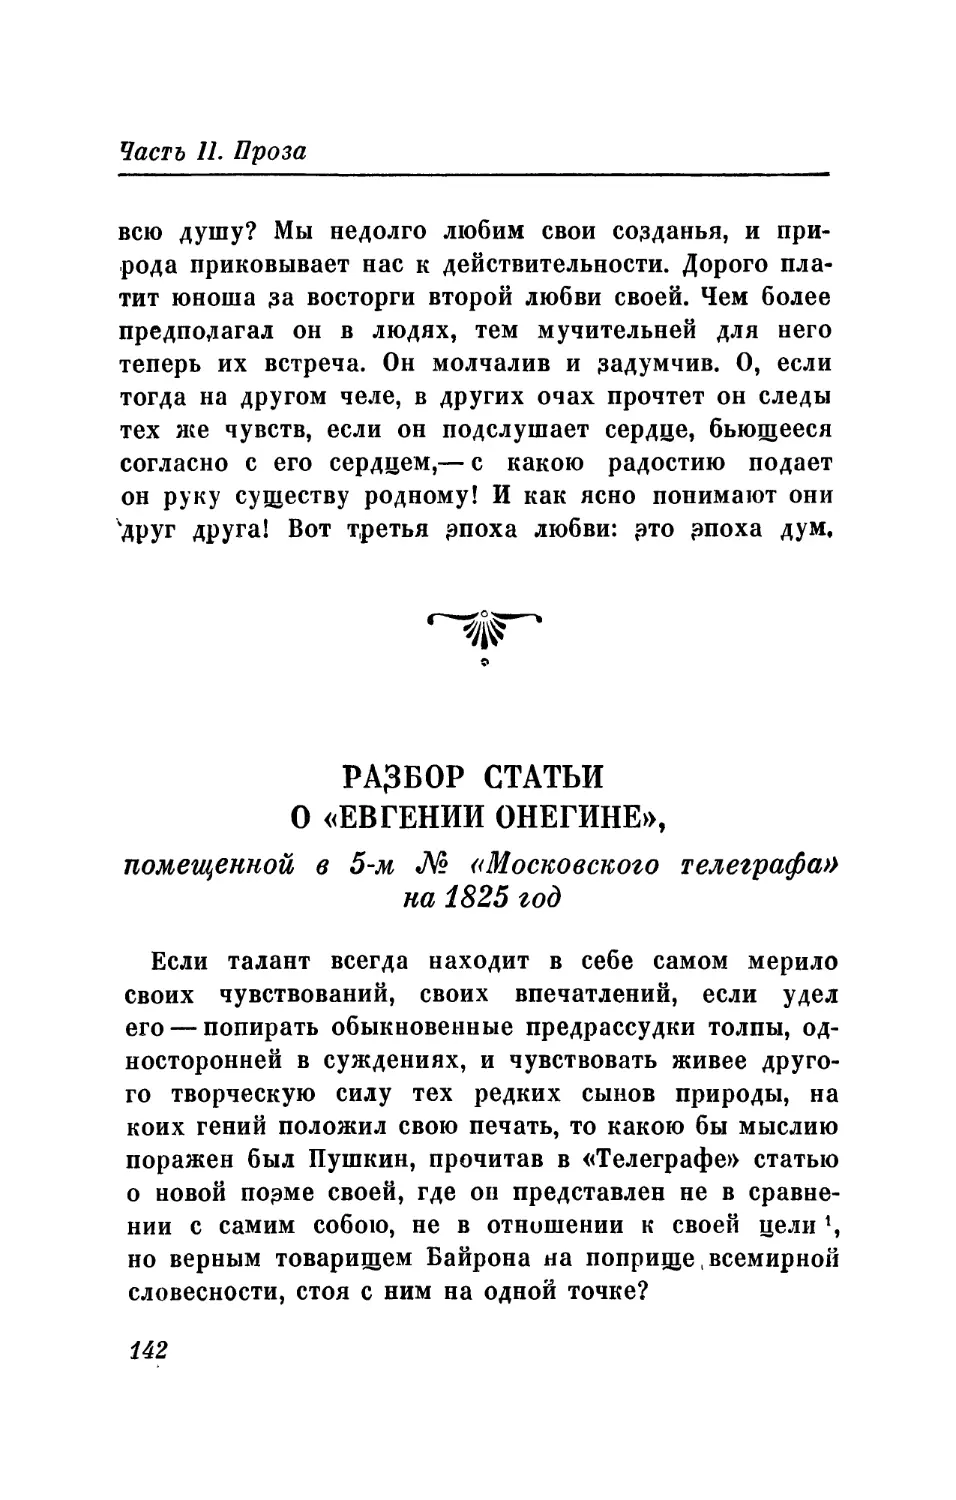 Разбор статьи о «Евгении Онегине», помещенной в 5-м № «Московского телеграфа» на 1825 год